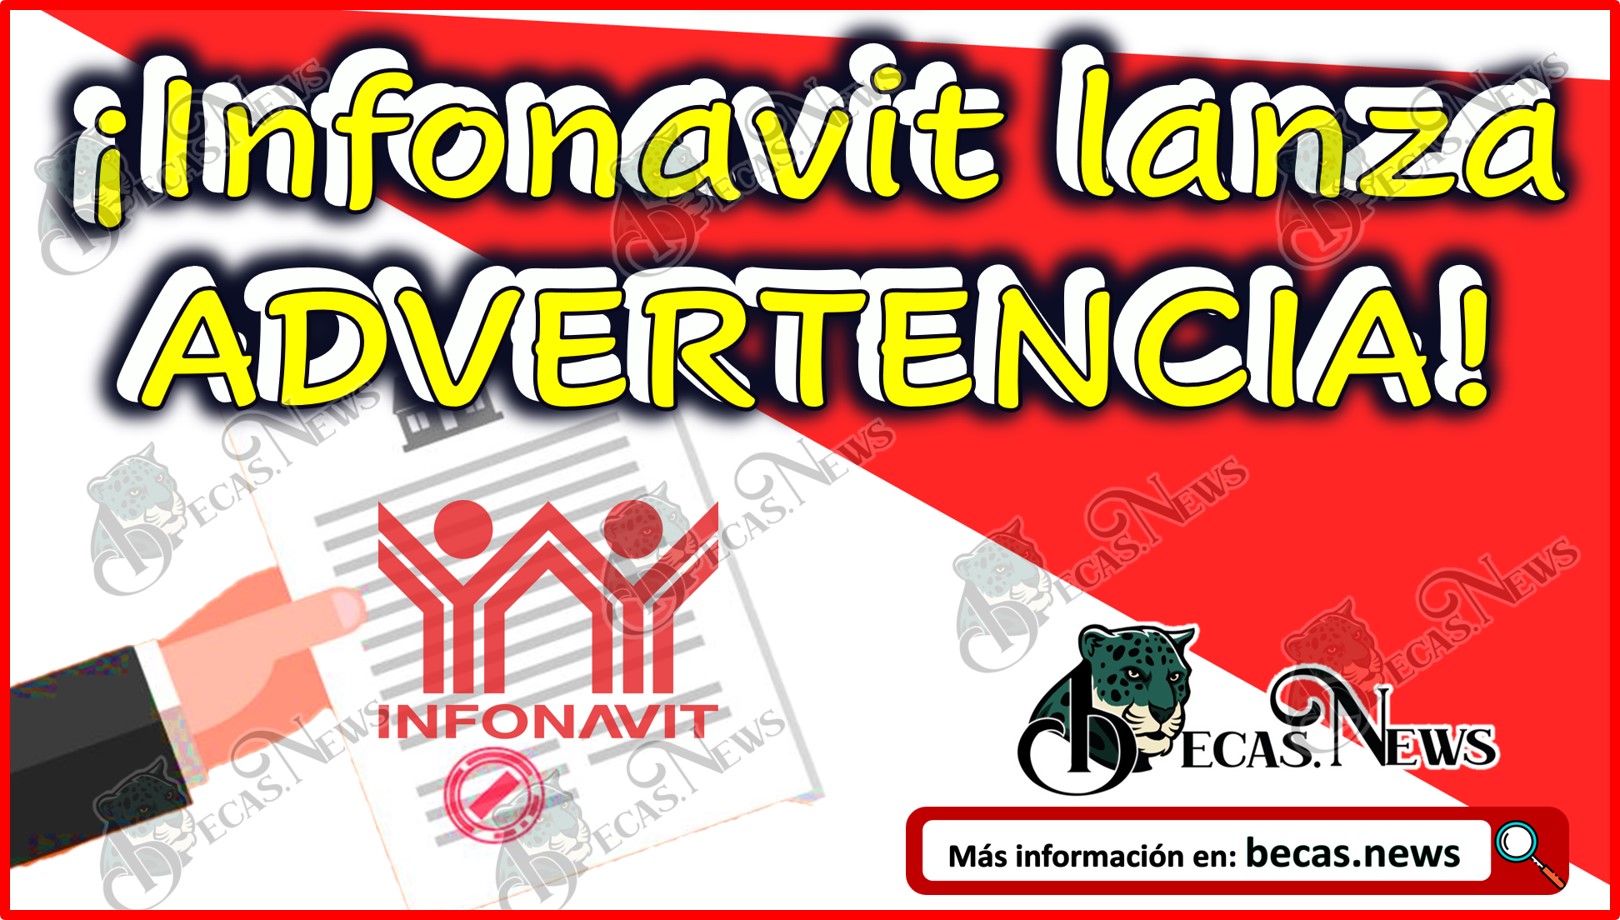 ¡Infonavit lanza ADVERTENCIA! Se sancionará a quien no cumpla con estos requisitos al solicitar un crédito.